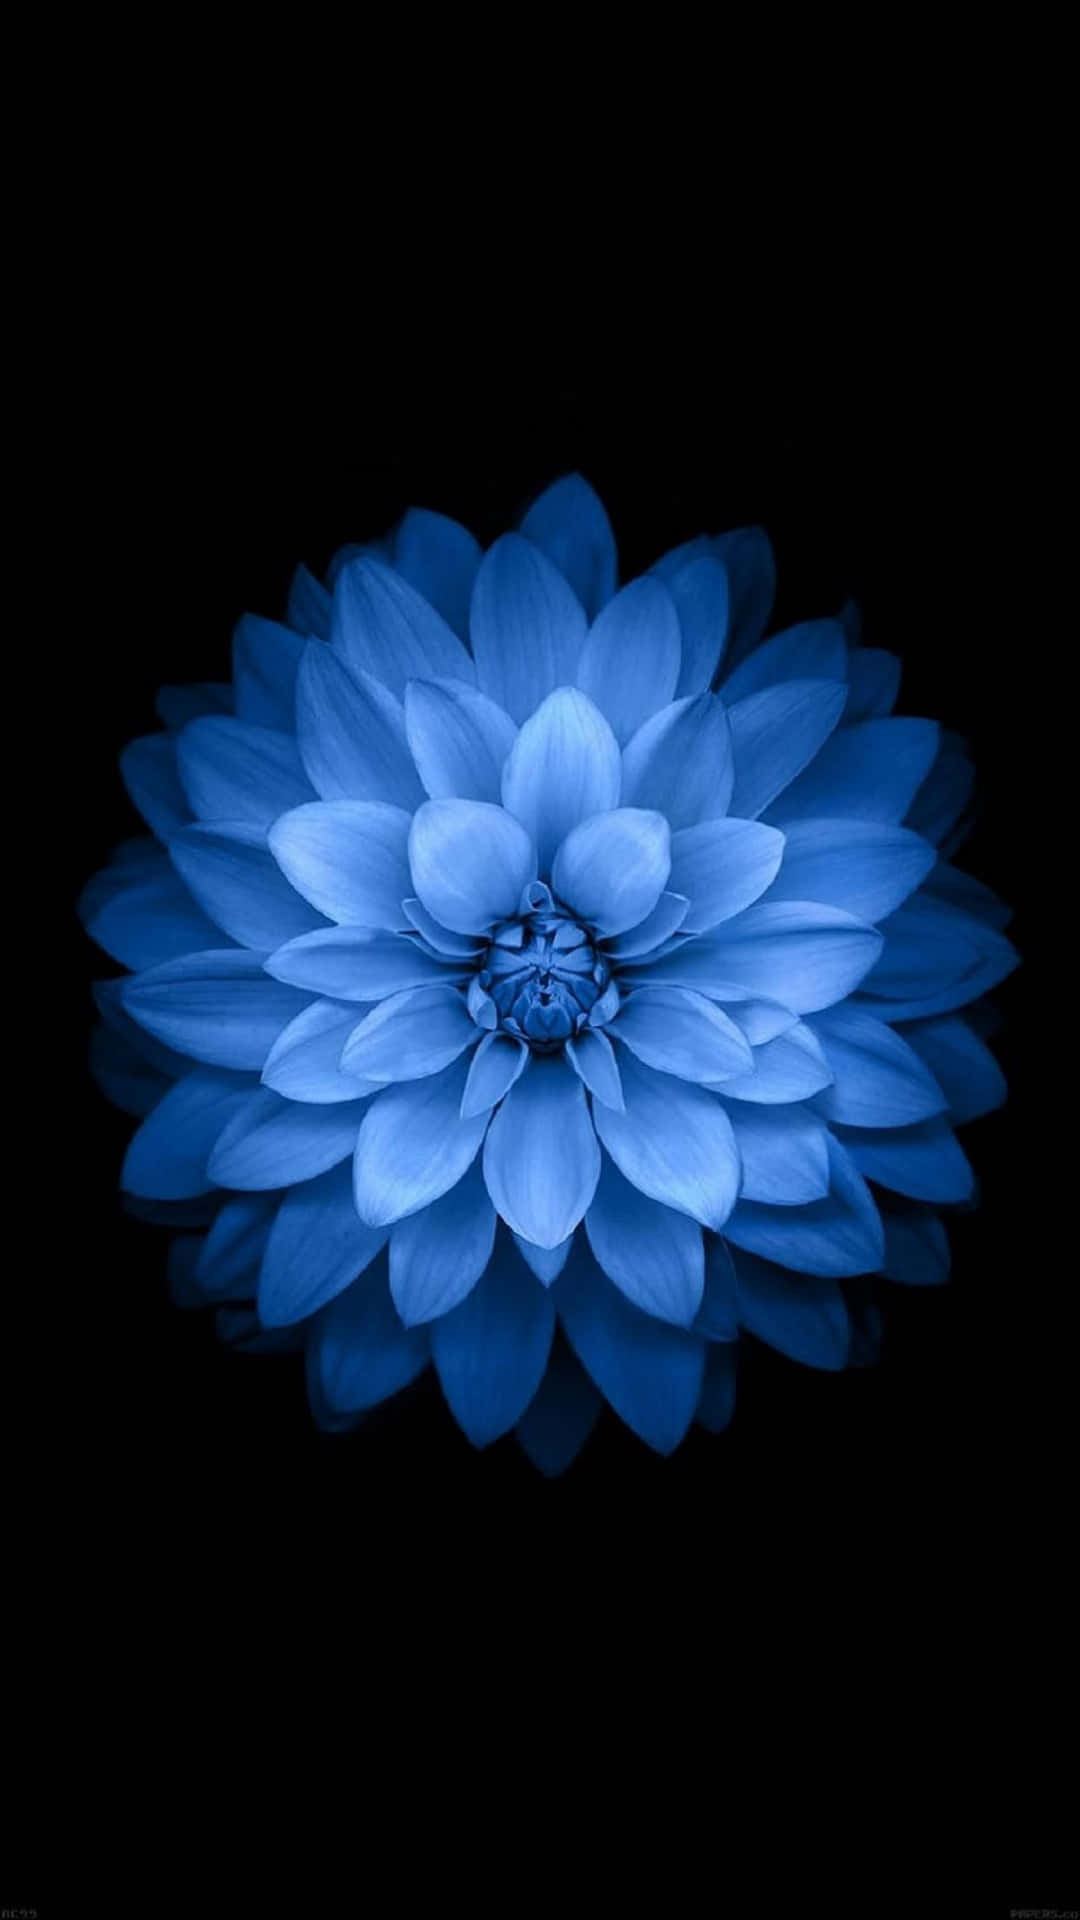 Enchanting Blue Flower in Full Bloom